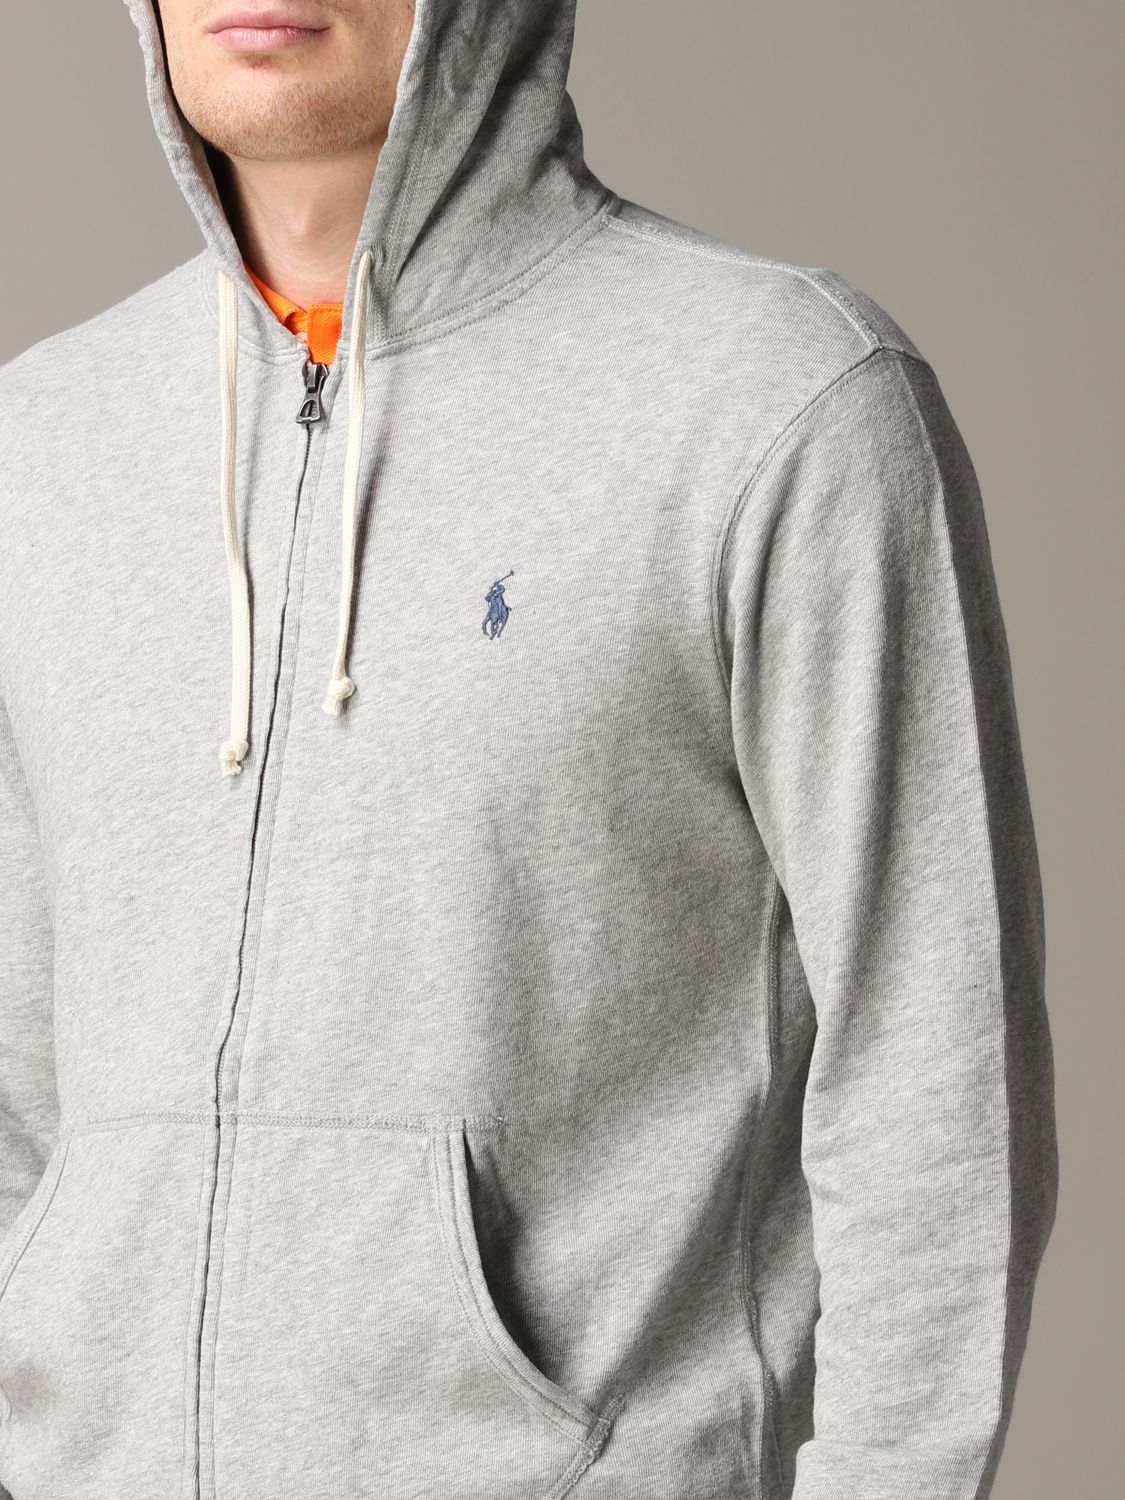 Grau S HERREN Pullovers & Sweatshirts Mit Reißverschluss Ralph Lauren sweatshirt Rabatt 64 % 